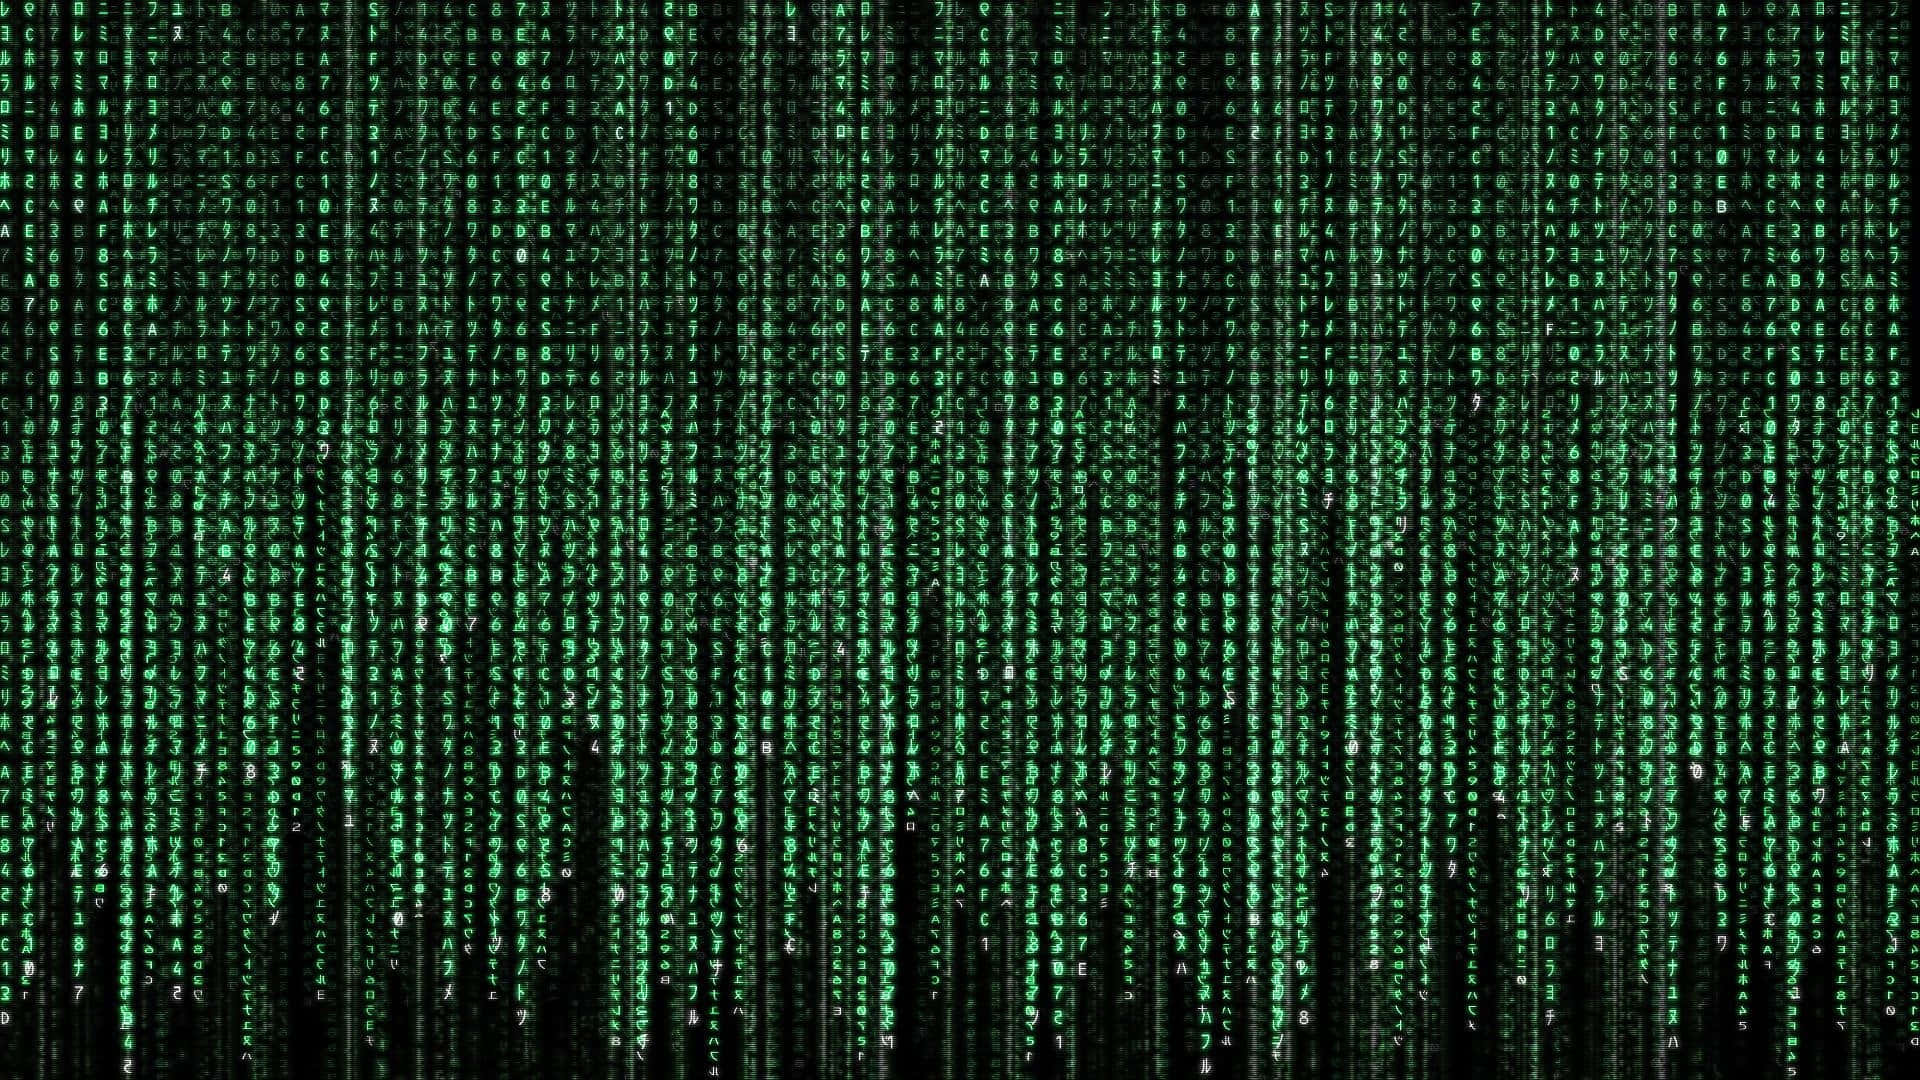 Blimer Närvarande I Matrixen Genom Att Zooma In På Bakgrundsbilden För Datorn Eller Mobilen.